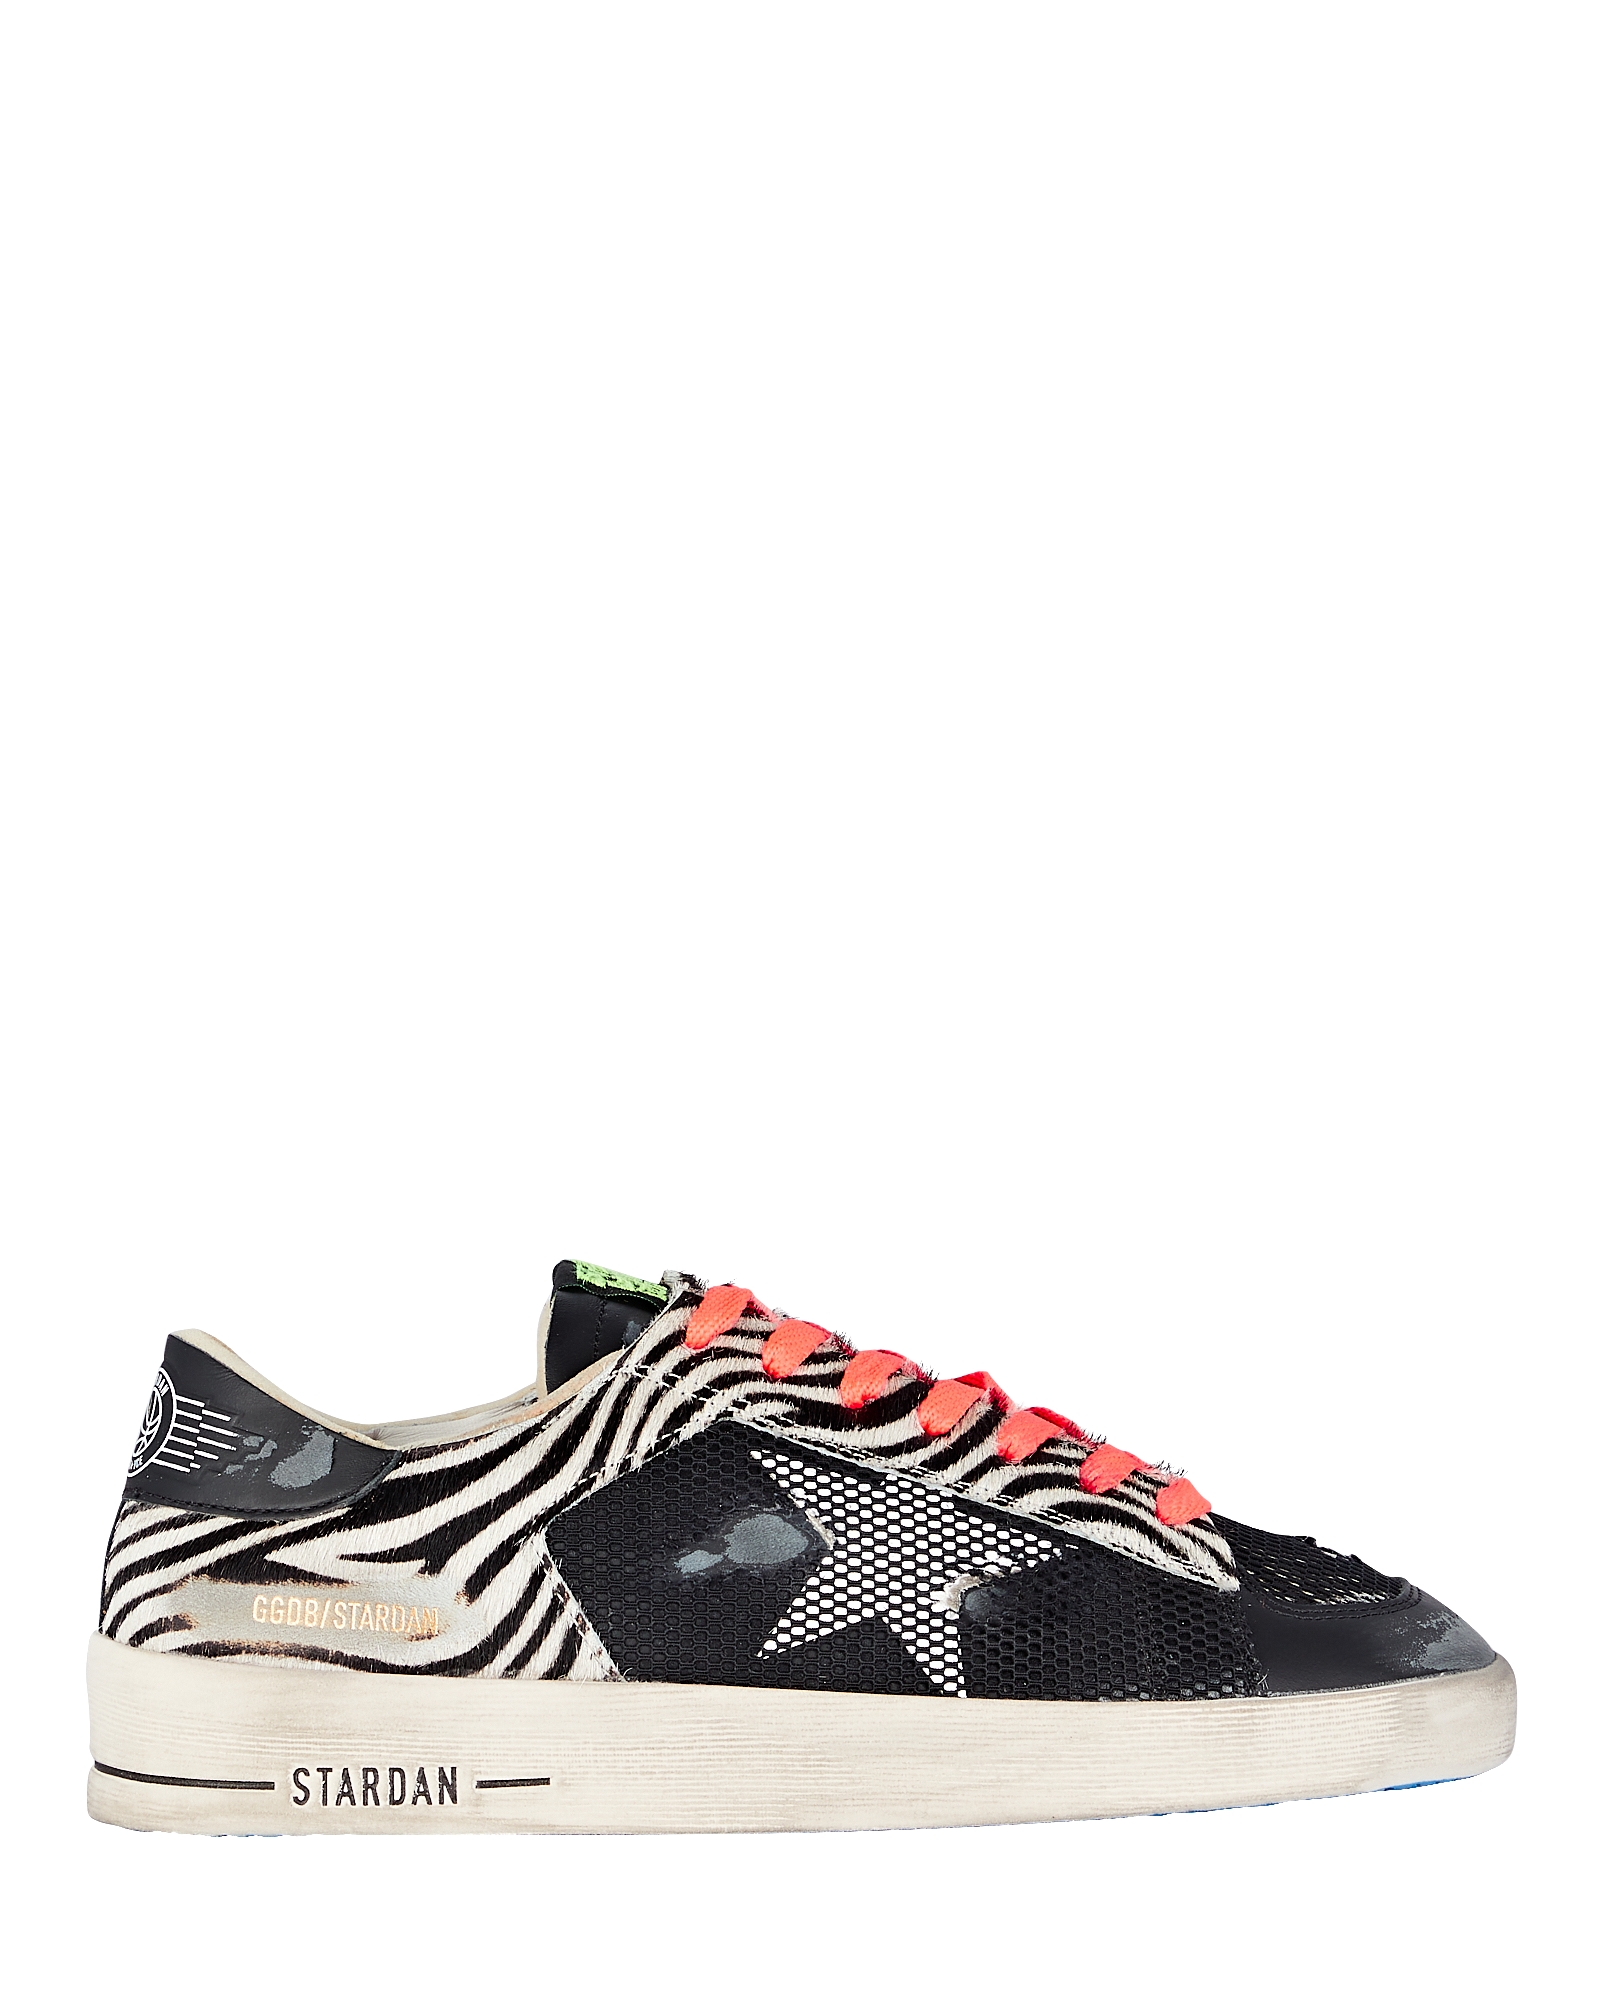 Stardan Zebra Low-Top Sneakers